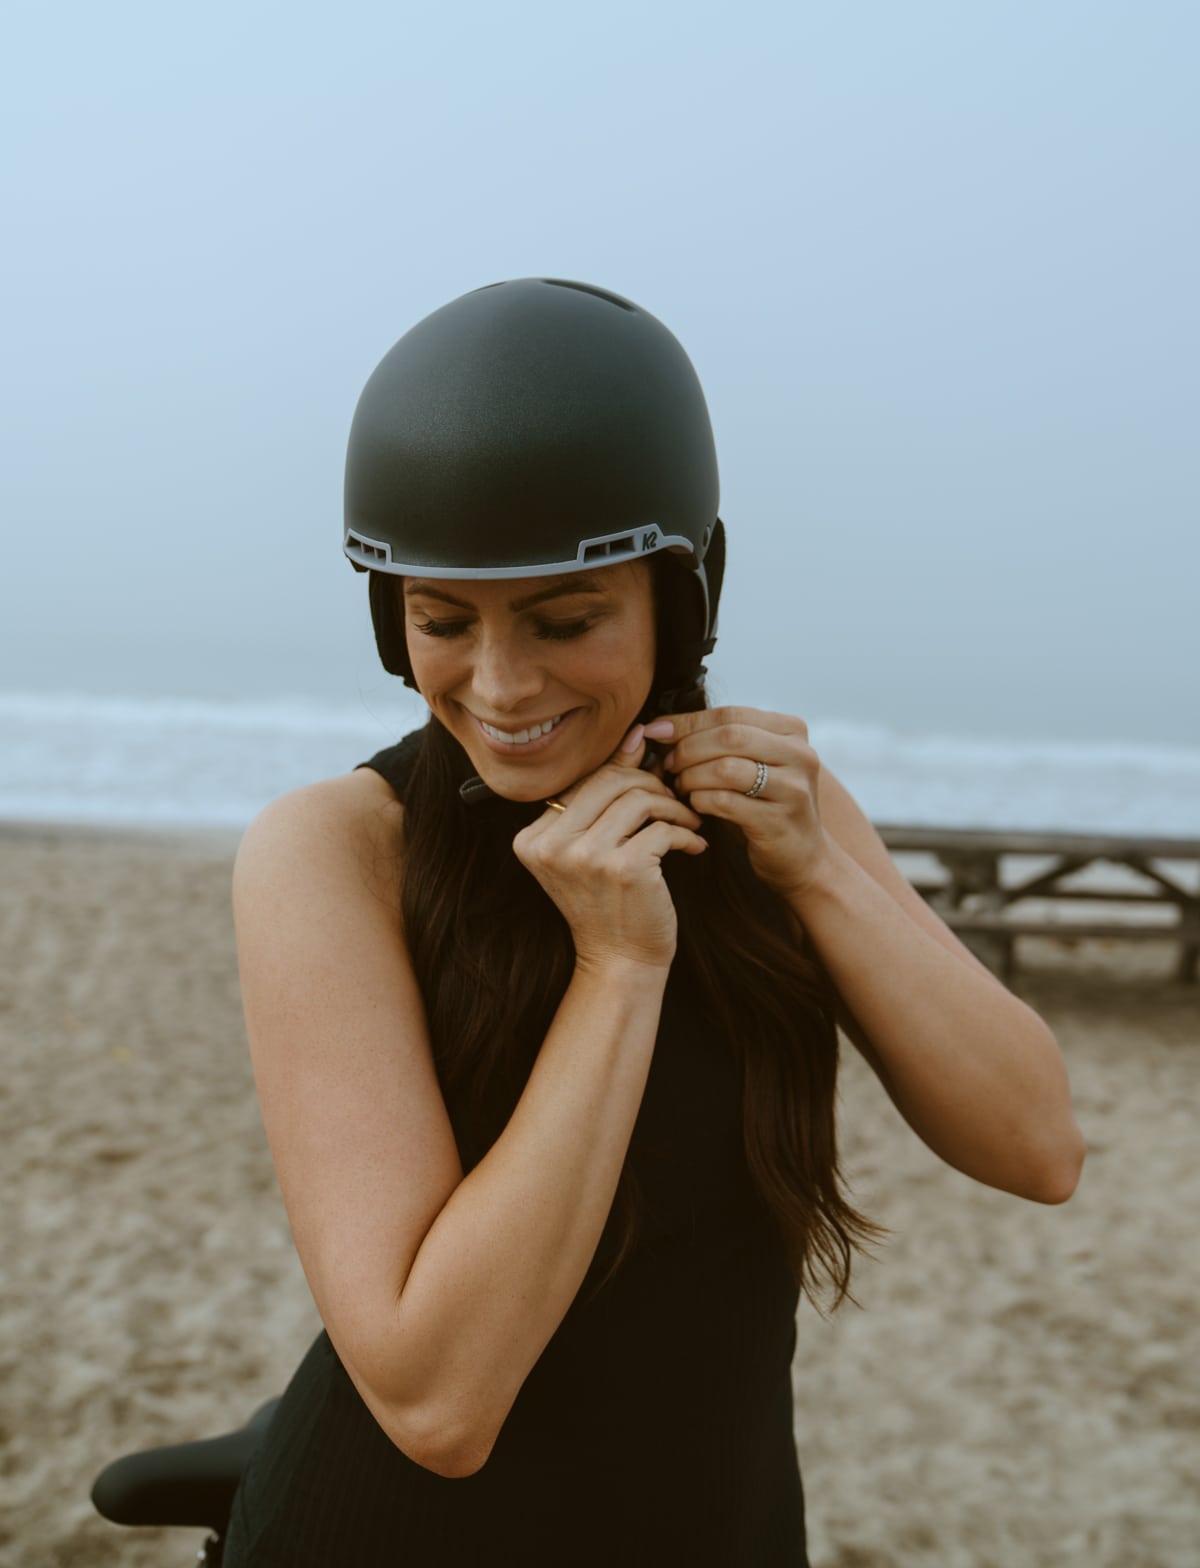 adult bike helmet